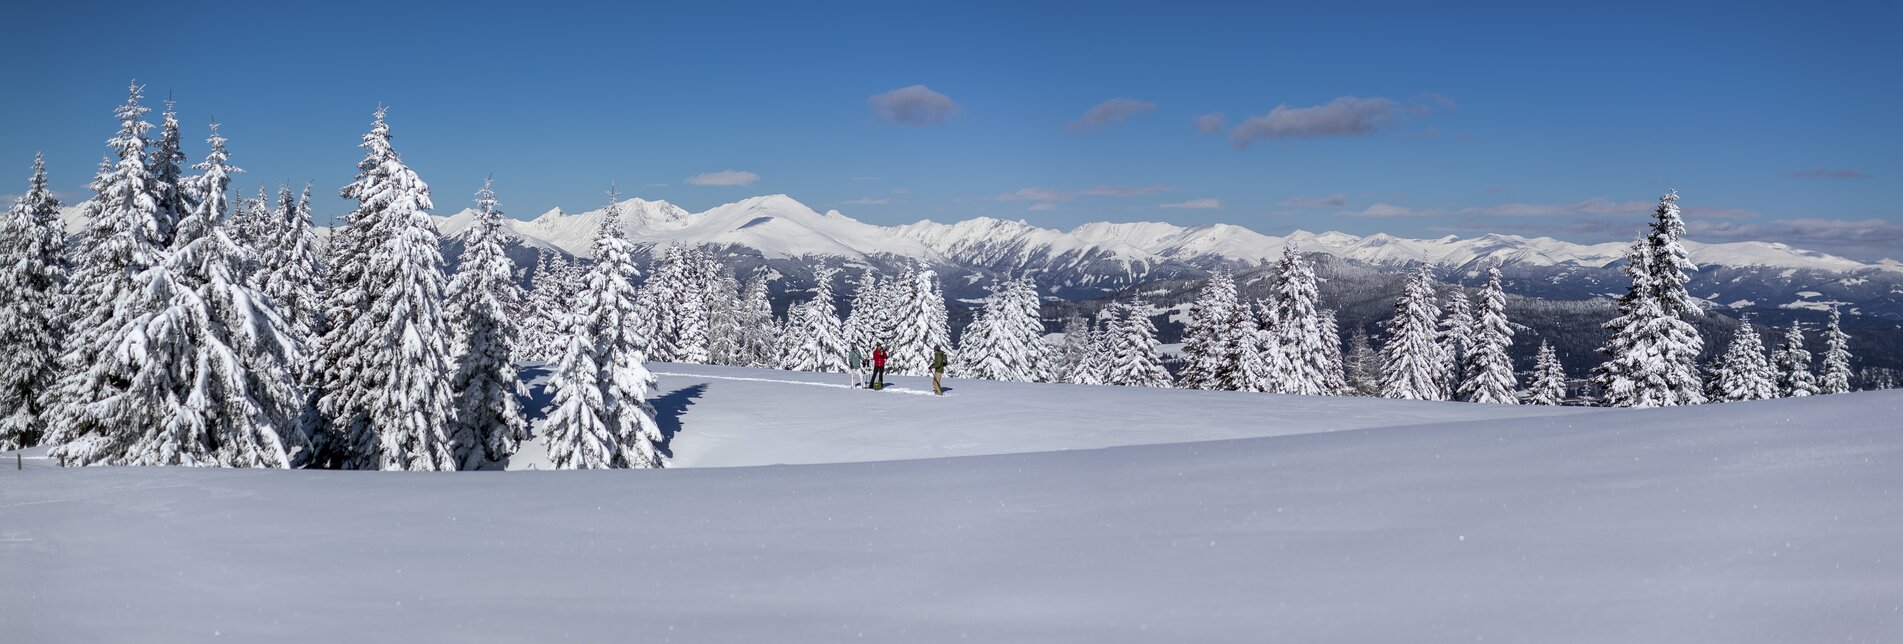 Schneeschuhwandern auf der Frauenalpe | © Steiermark Tourismus | Tom Lamm